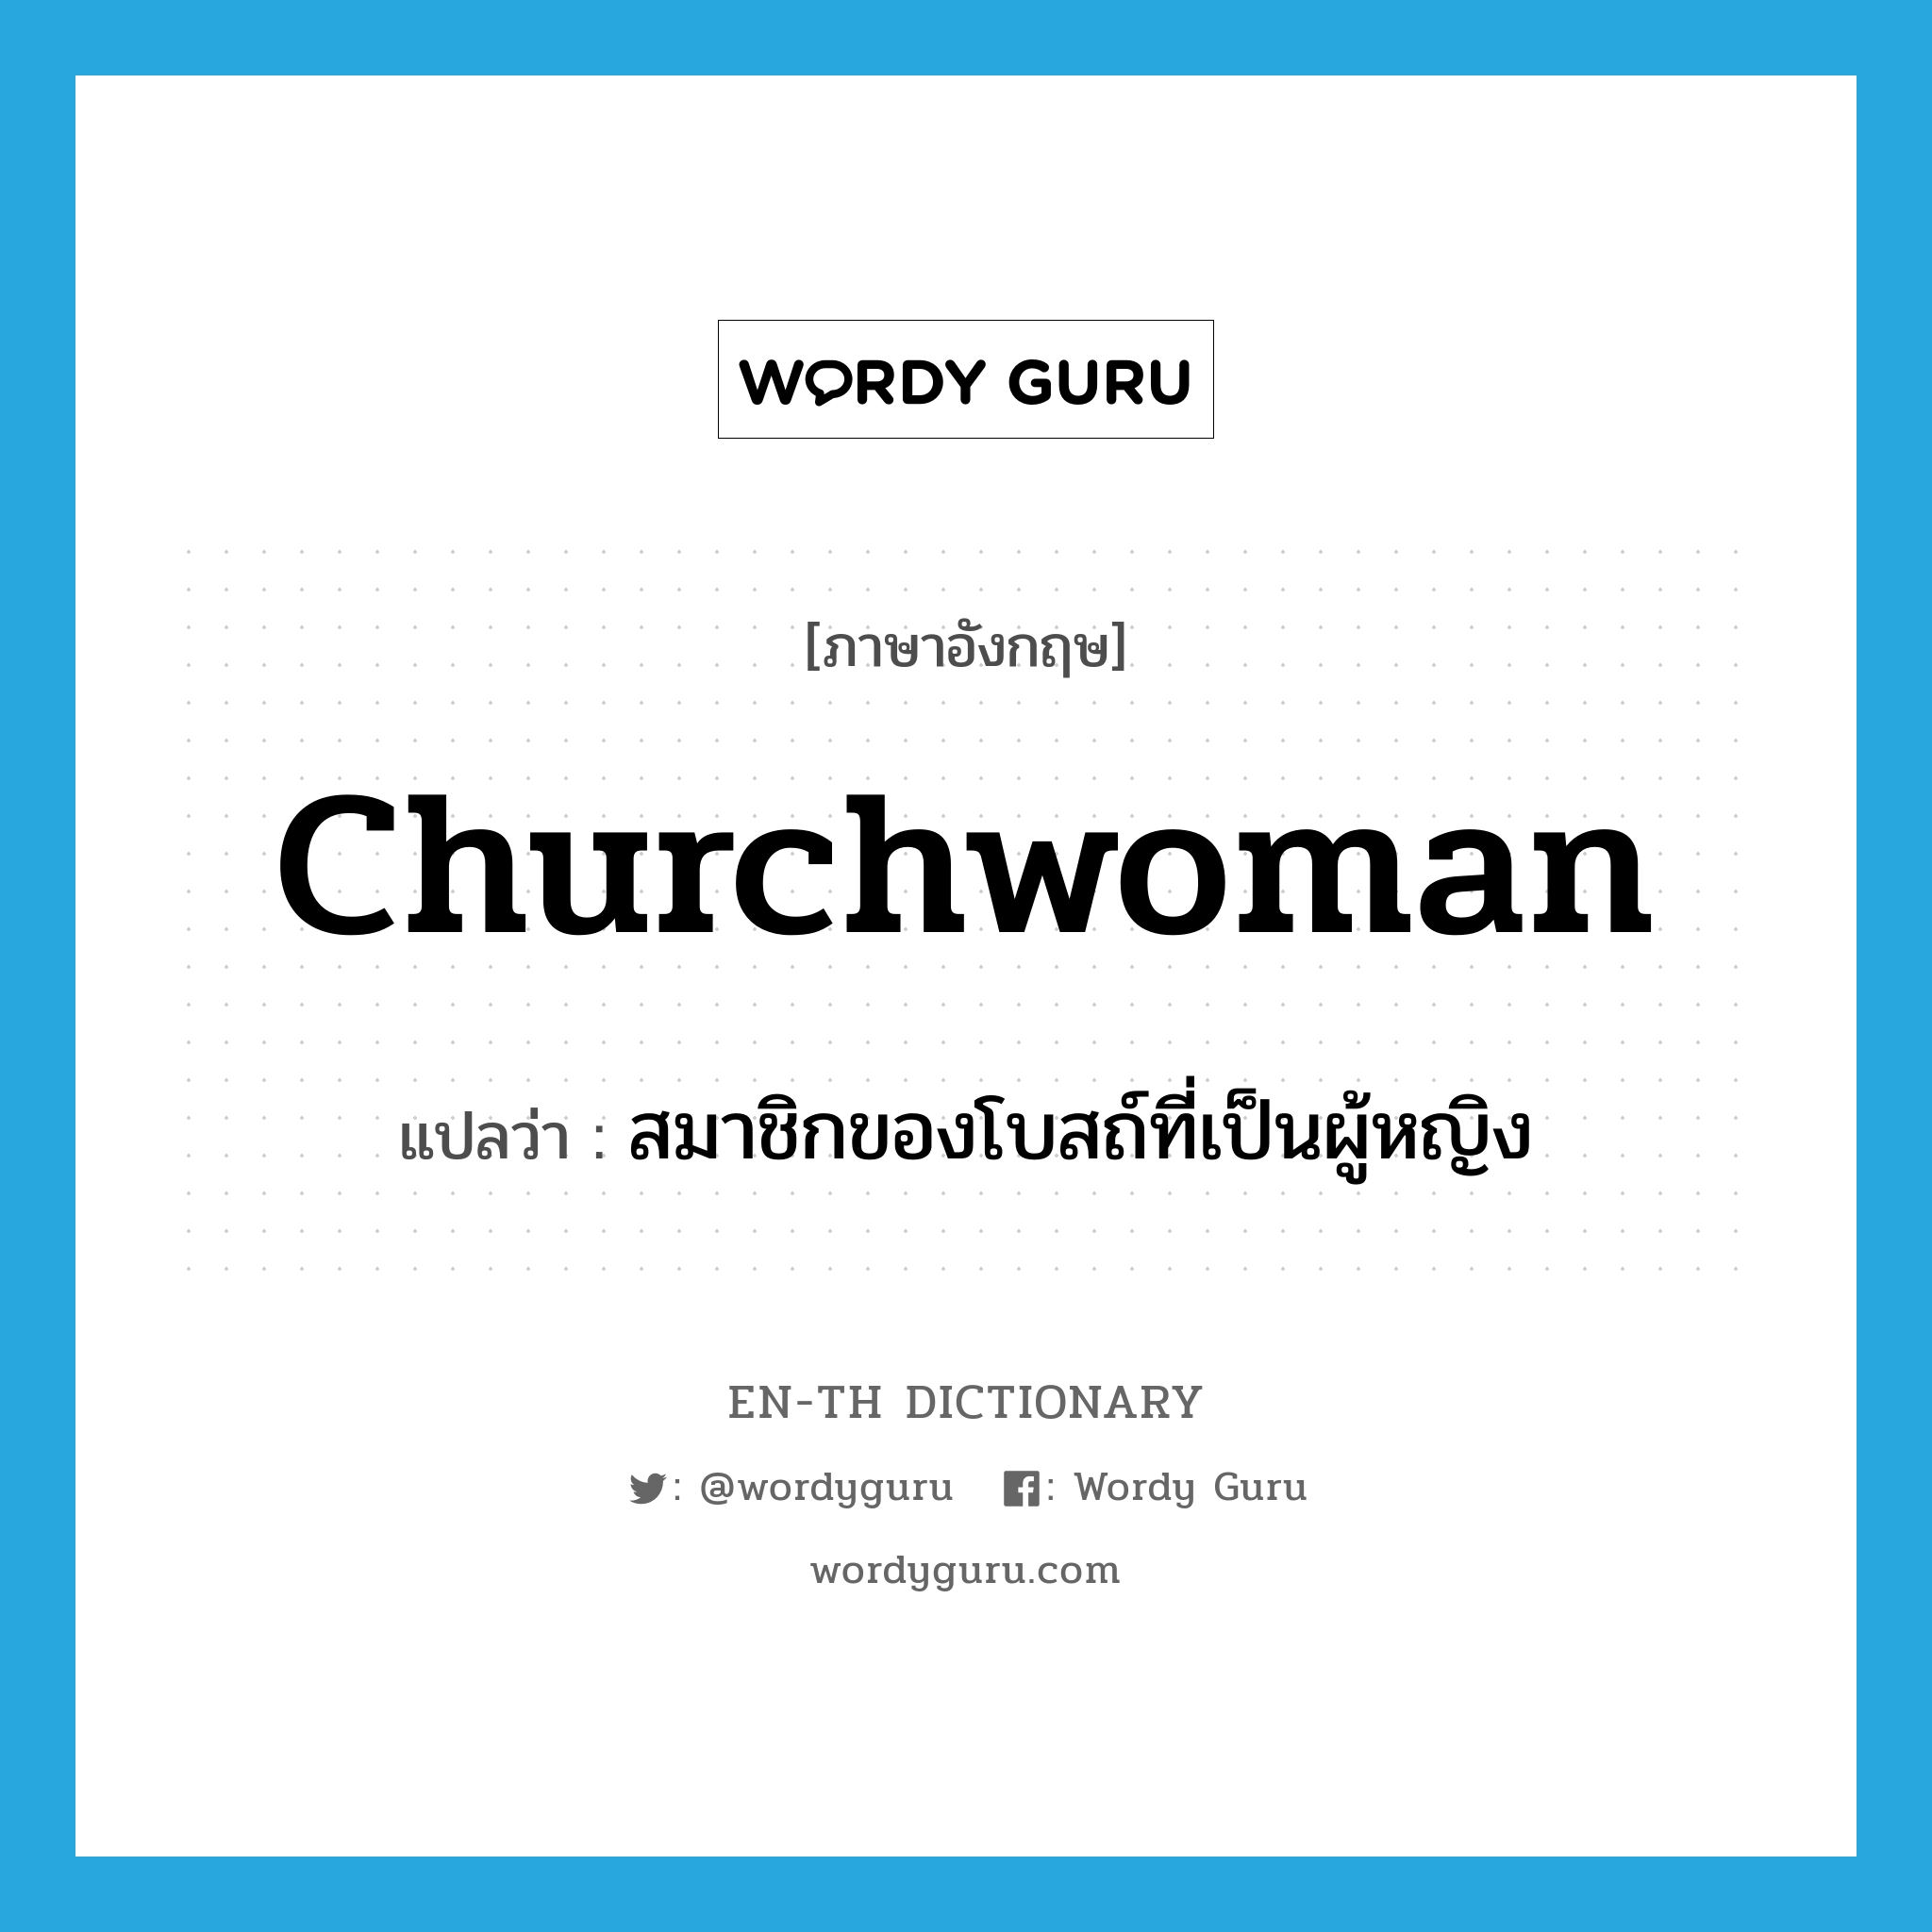 สมาชิกของโบสถ์ที่เป็นผู้หญิง ภาษาอังกฤษ?, คำศัพท์ภาษาอังกฤษ สมาชิกของโบสถ์ที่เป็นผู้หญิง แปลว่า churchwoman ประเภท N หมวด N